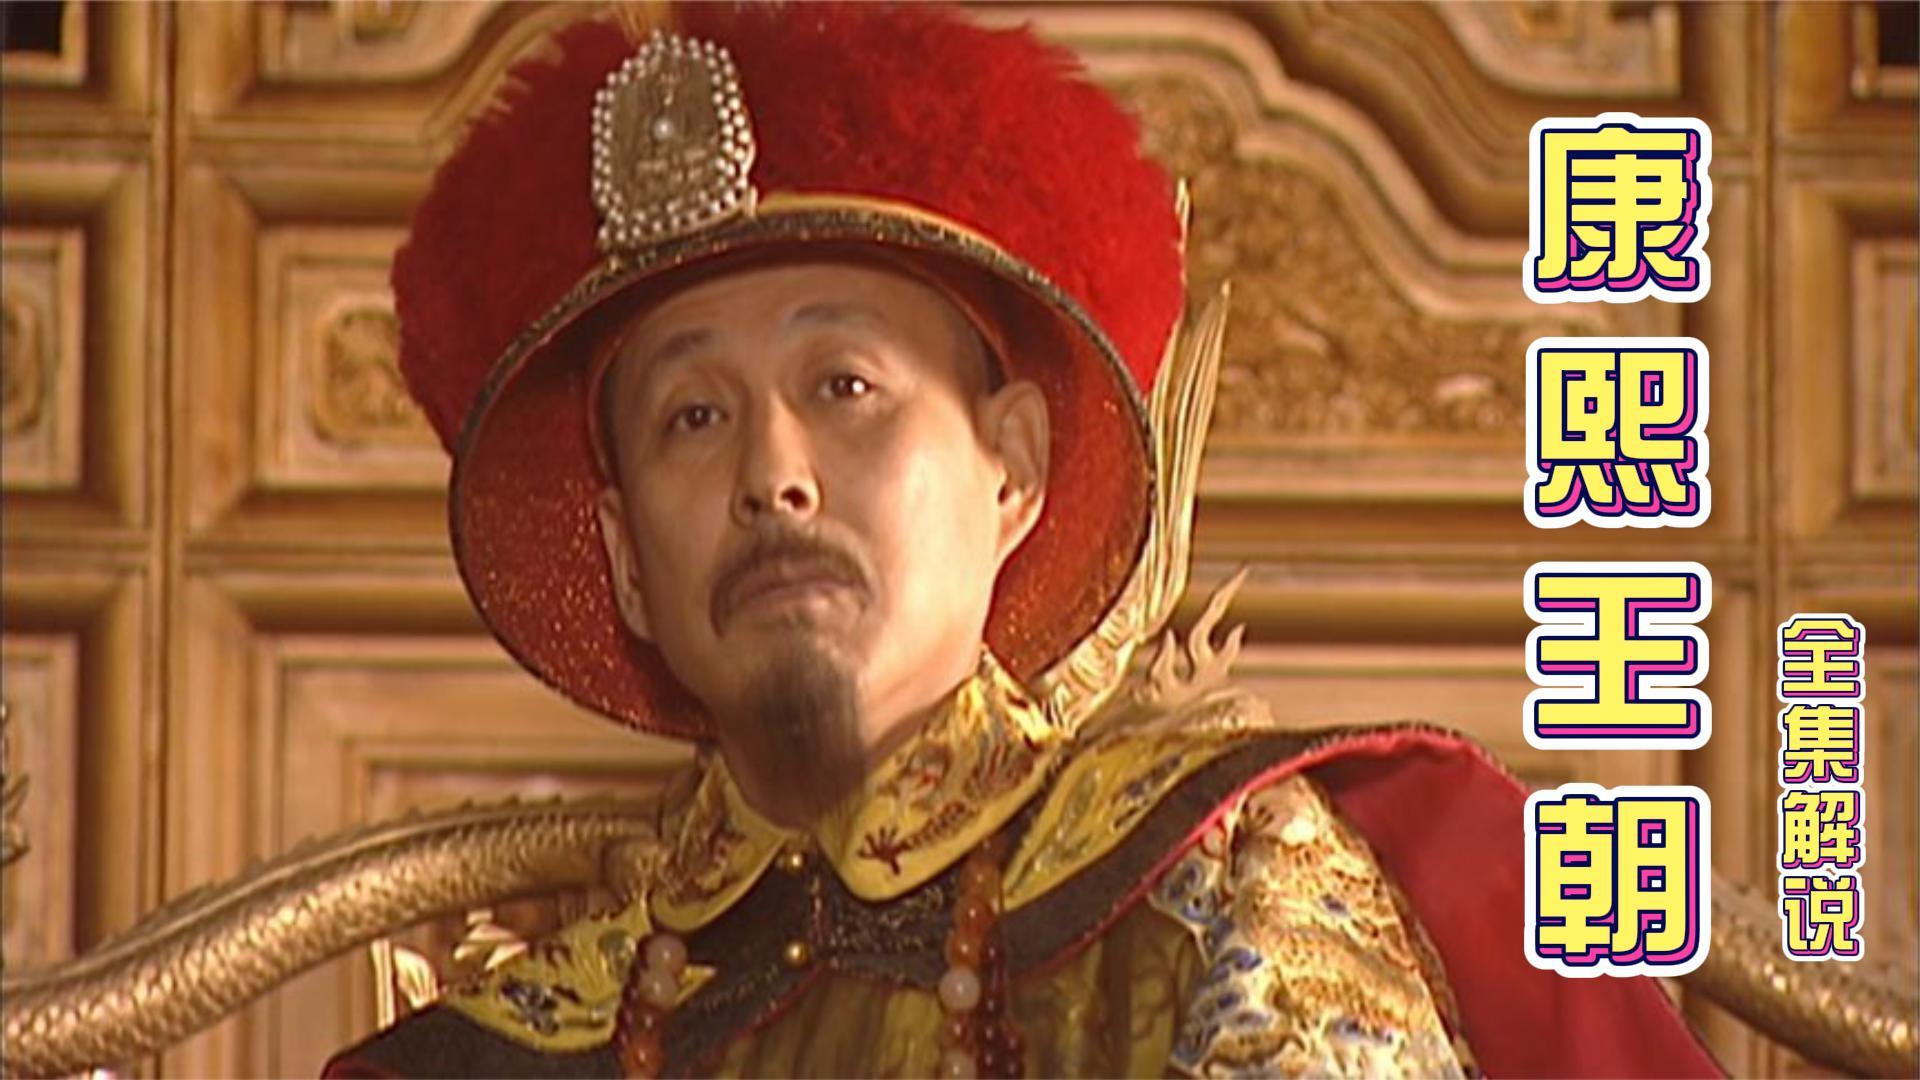 一口气看完全剧系列:《康熙王朝》,还原康熙皇帝的传奇一生